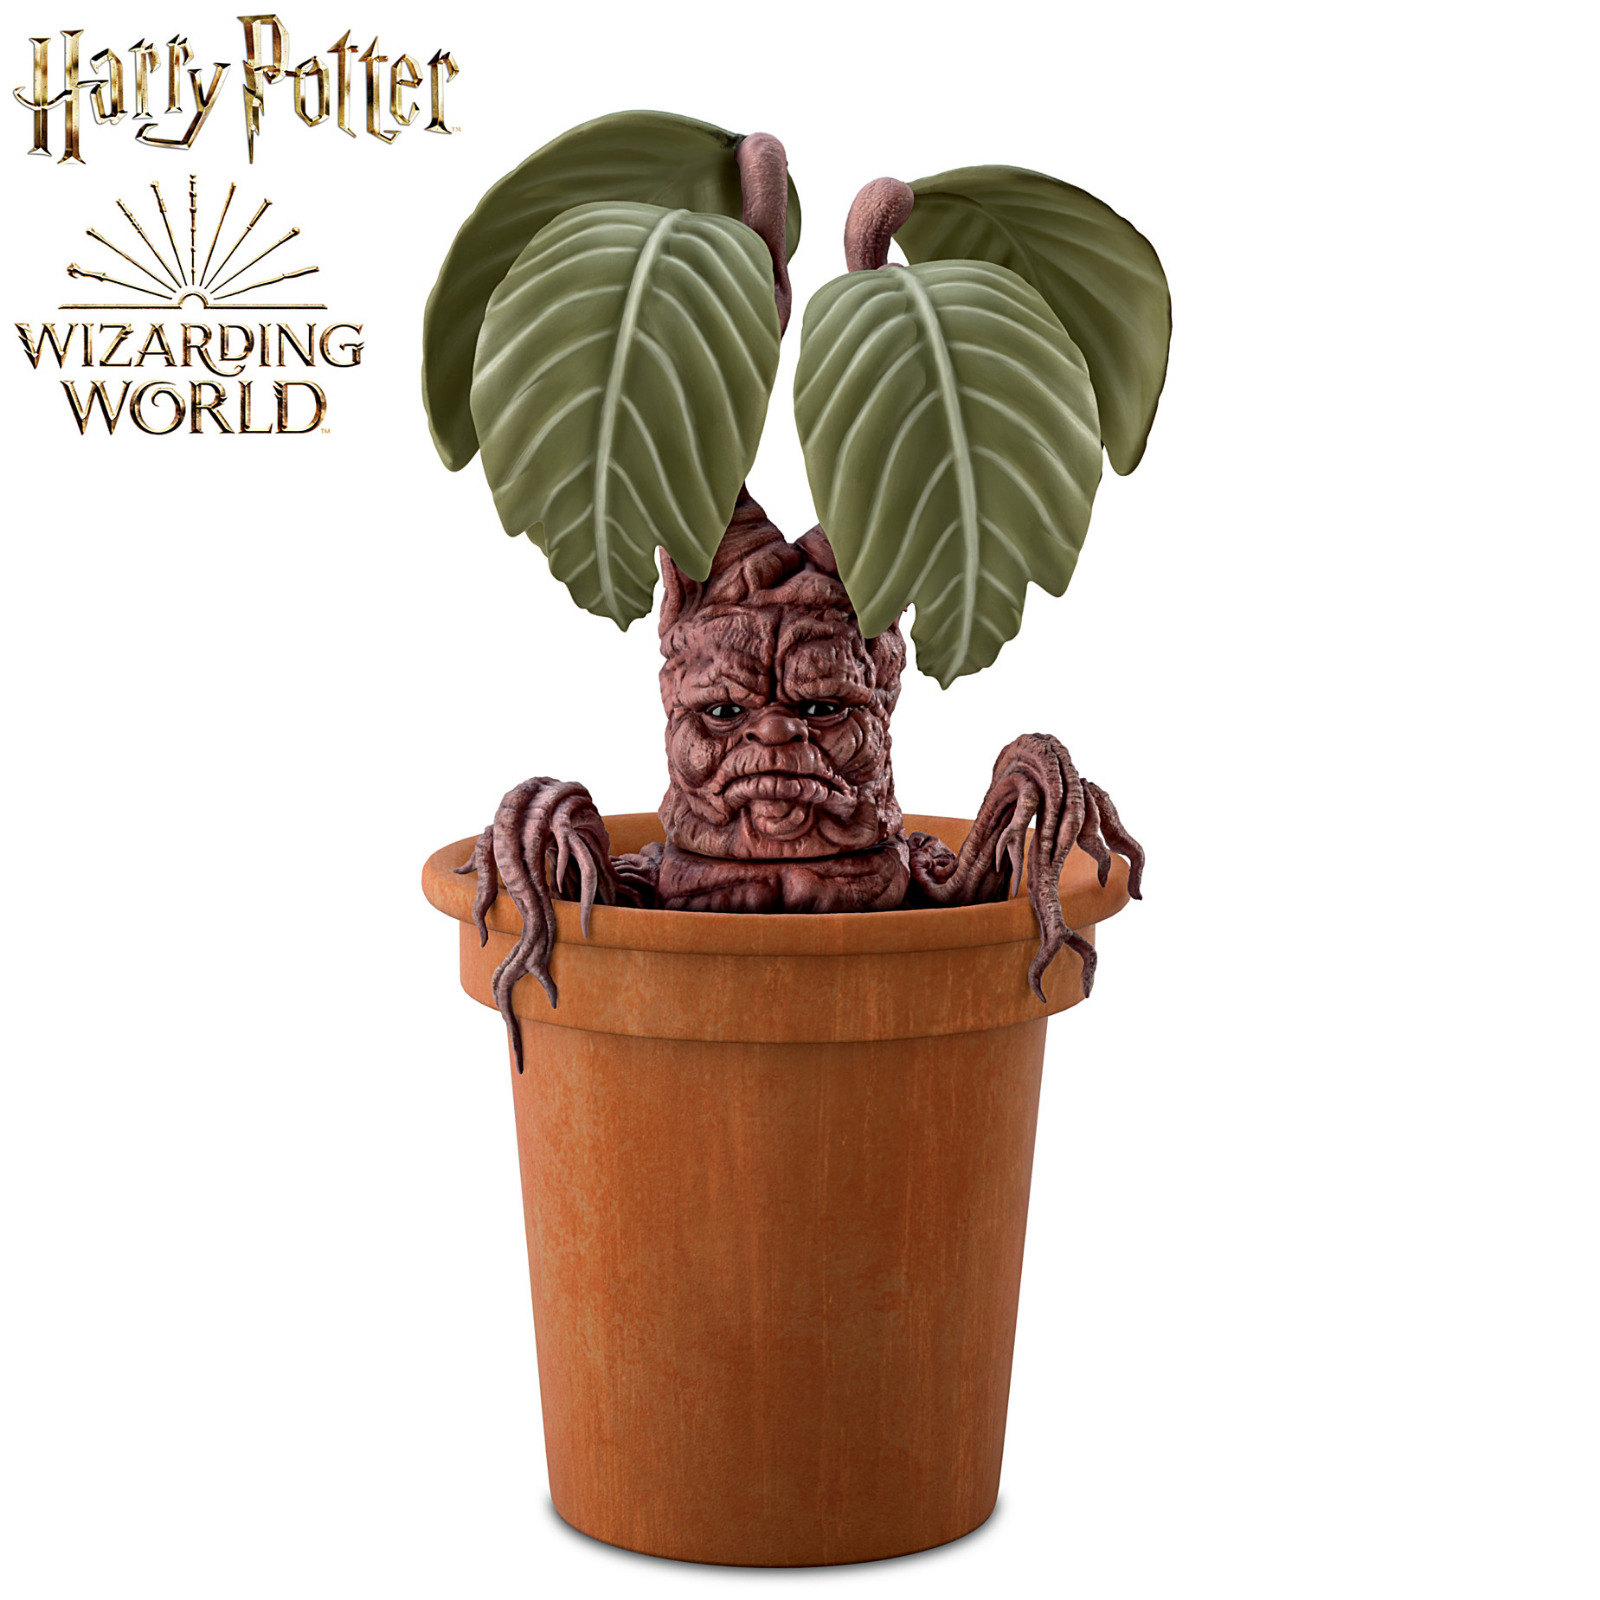 Harry Potter MANDRAKE Poseable Portrait Figure With Planter Pot by Ashton Drake